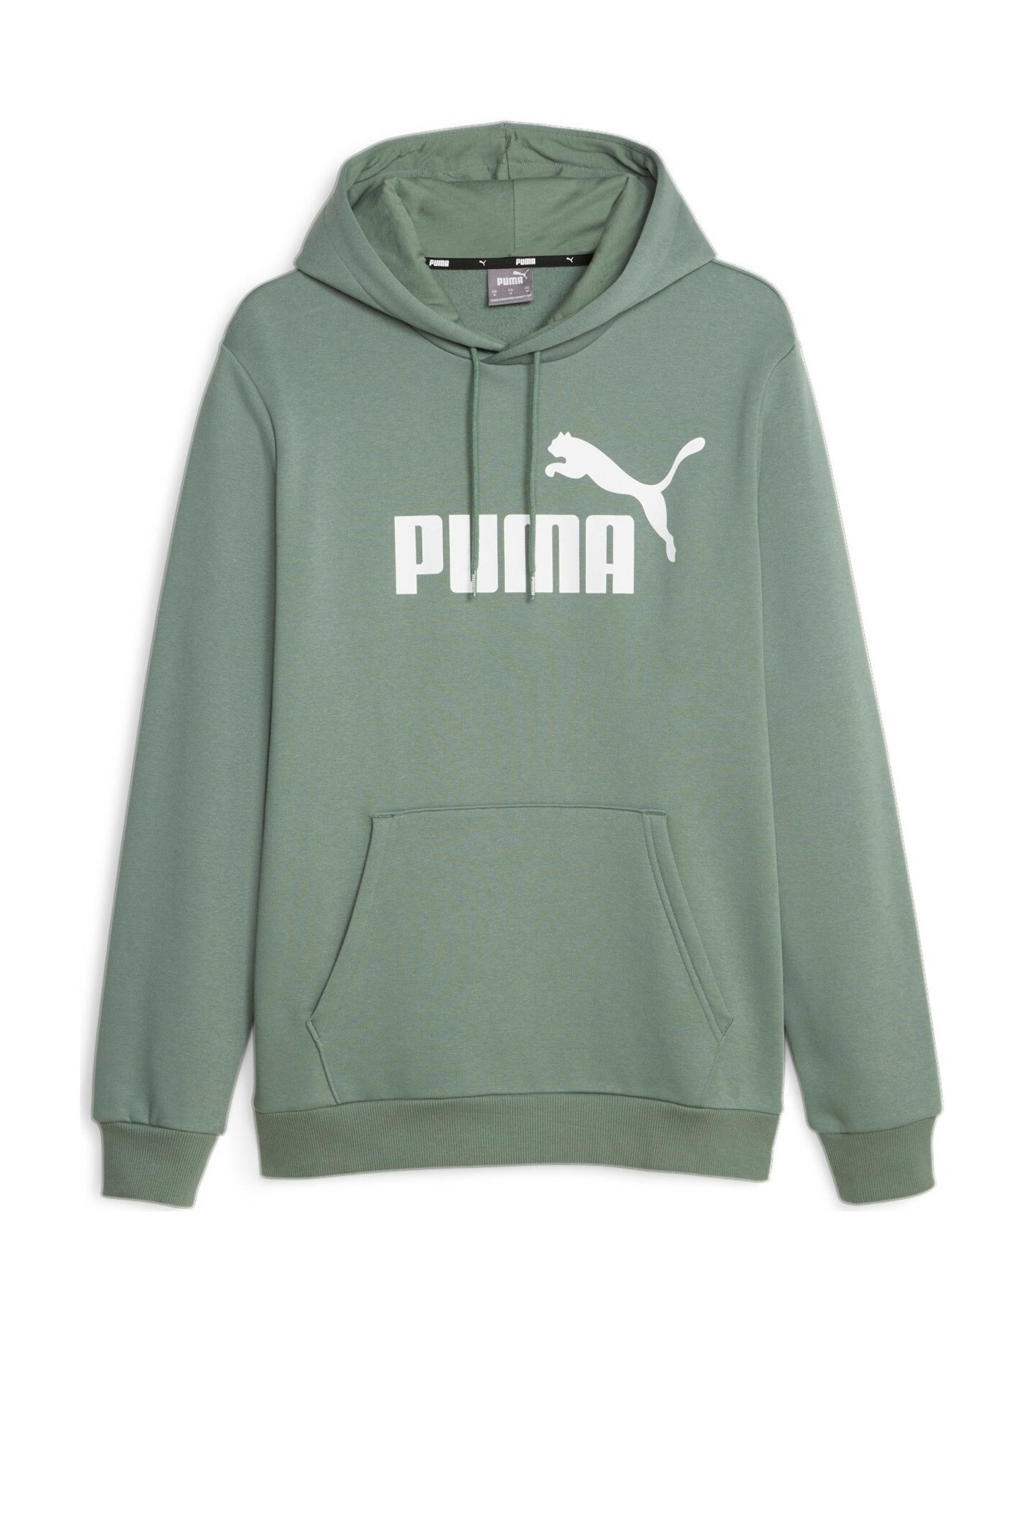 Groene heren Puma hoodie van sweat materiaal met logo dessin, lange mouwen en capuchon